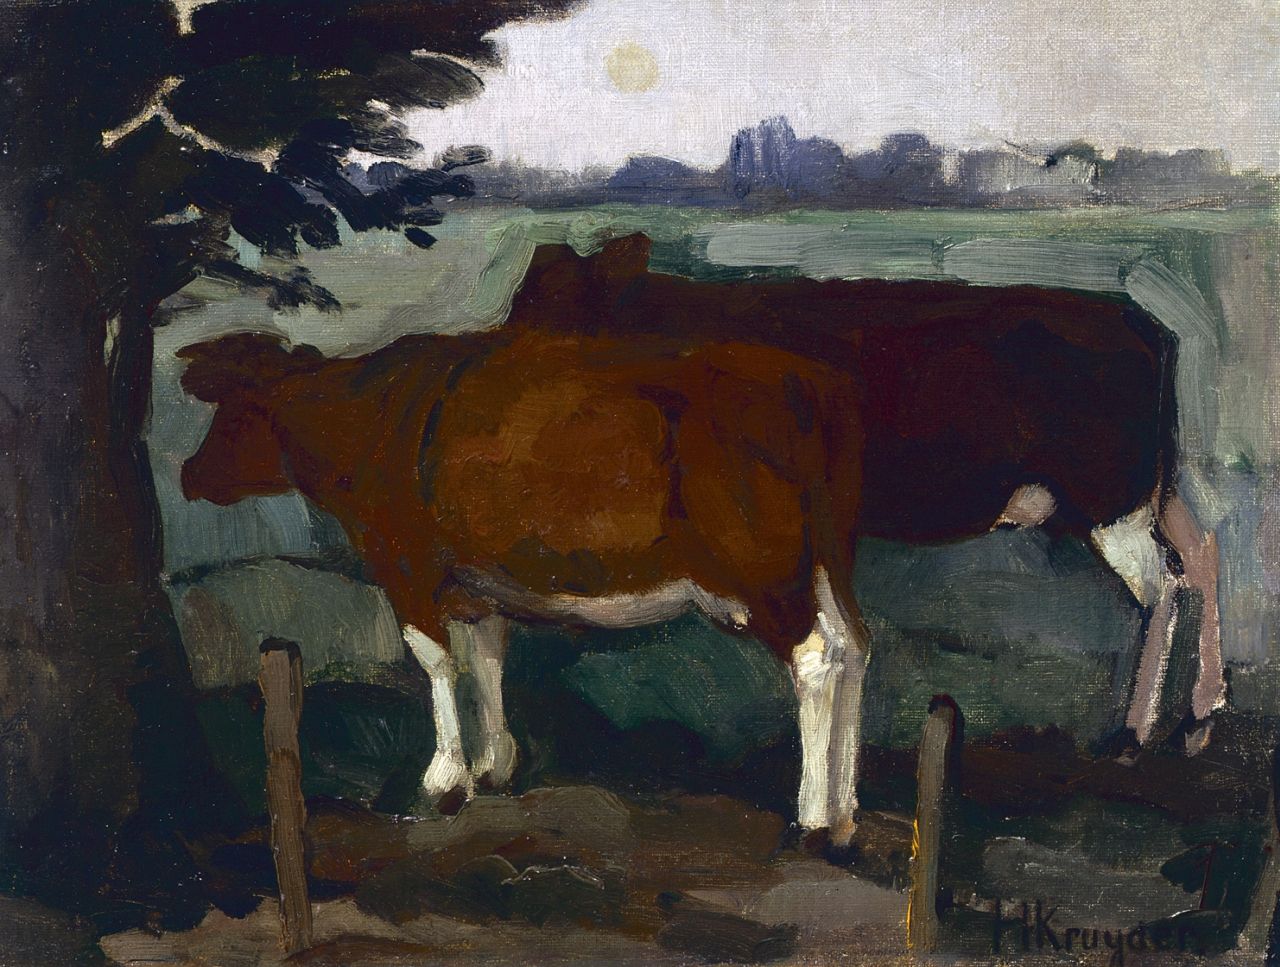 Kruyder H.J.  | 'Herman' Justus Kruyder, Cows in a landscape, oil on canvas 29.8 x 39.2 cm, signed l.r.